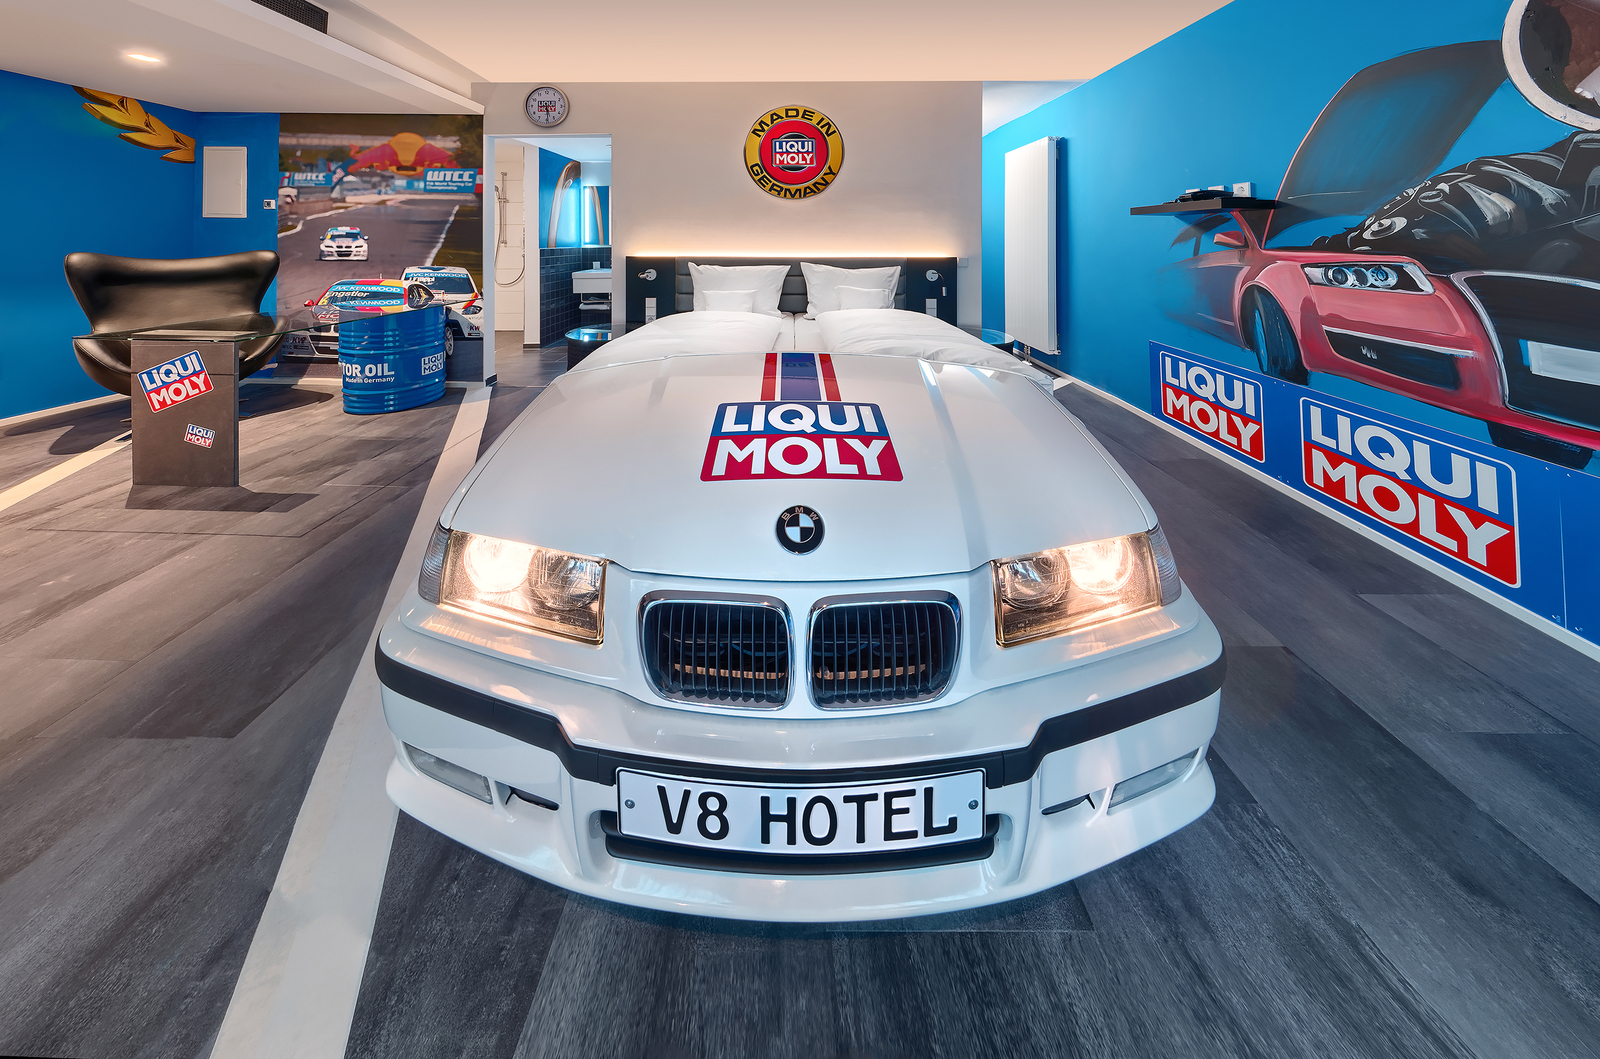 Weißes BMW Autobett im Liqui Moly-Themenzimmer im V8 Hotel neben einer blauen Wand mit Liqui Moly Logos